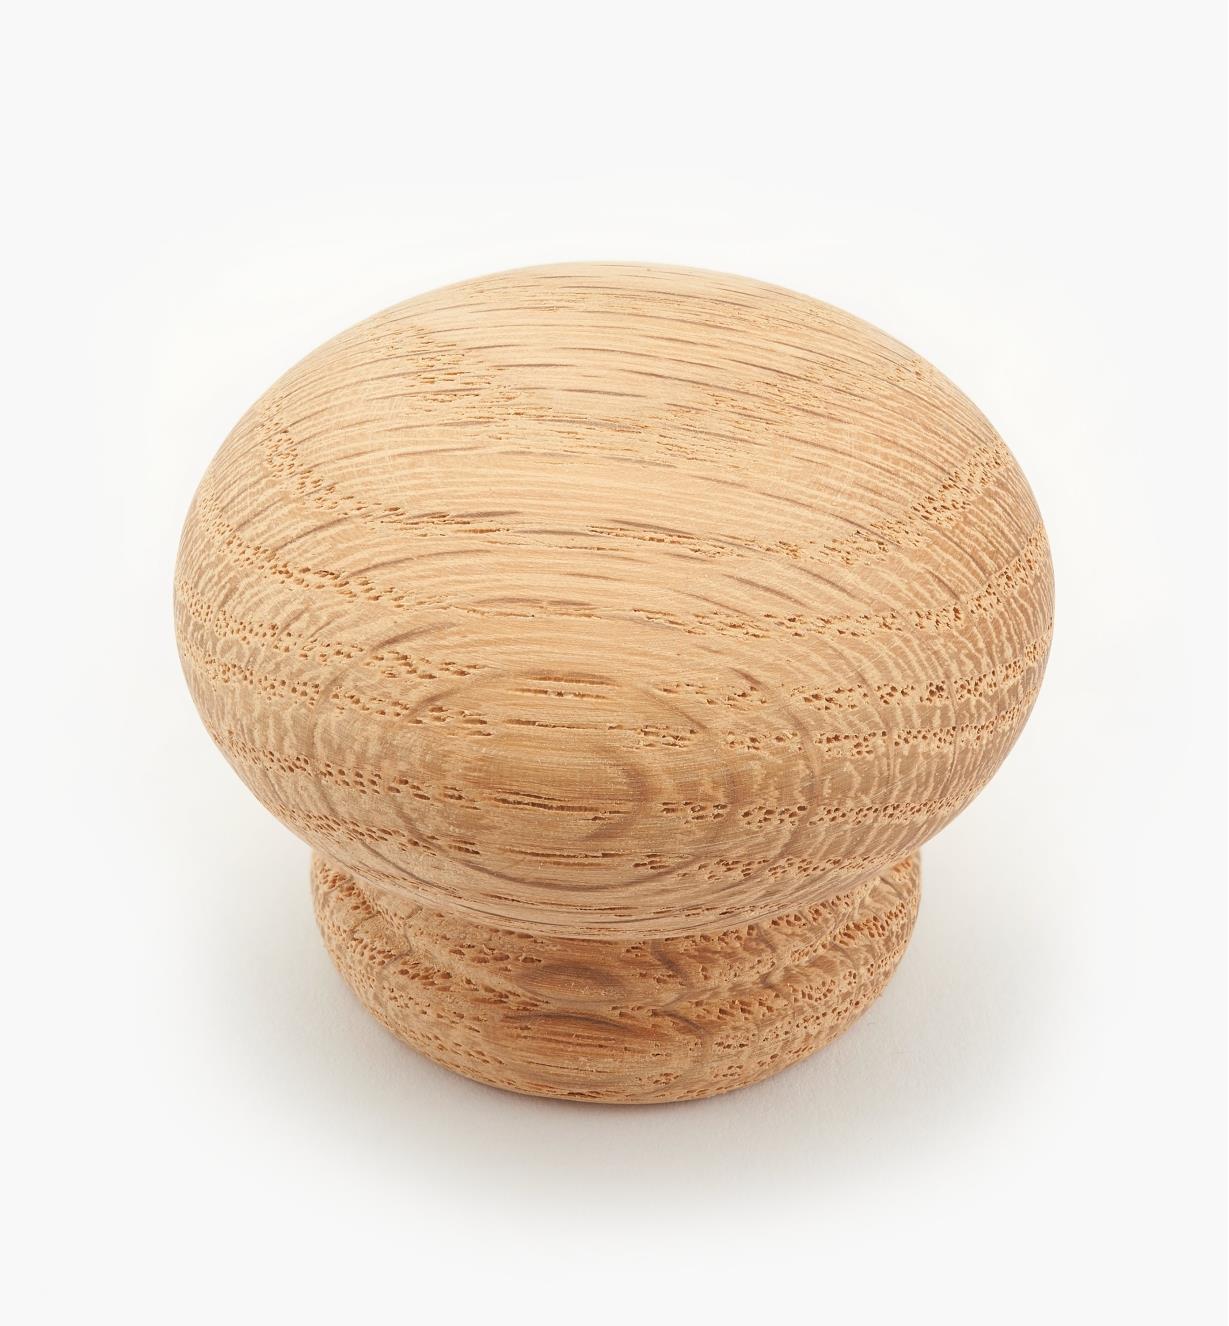 02G1005 - Bouton en bois de fil, chêne rouge, 1 3/4 po x 1 5/16 po